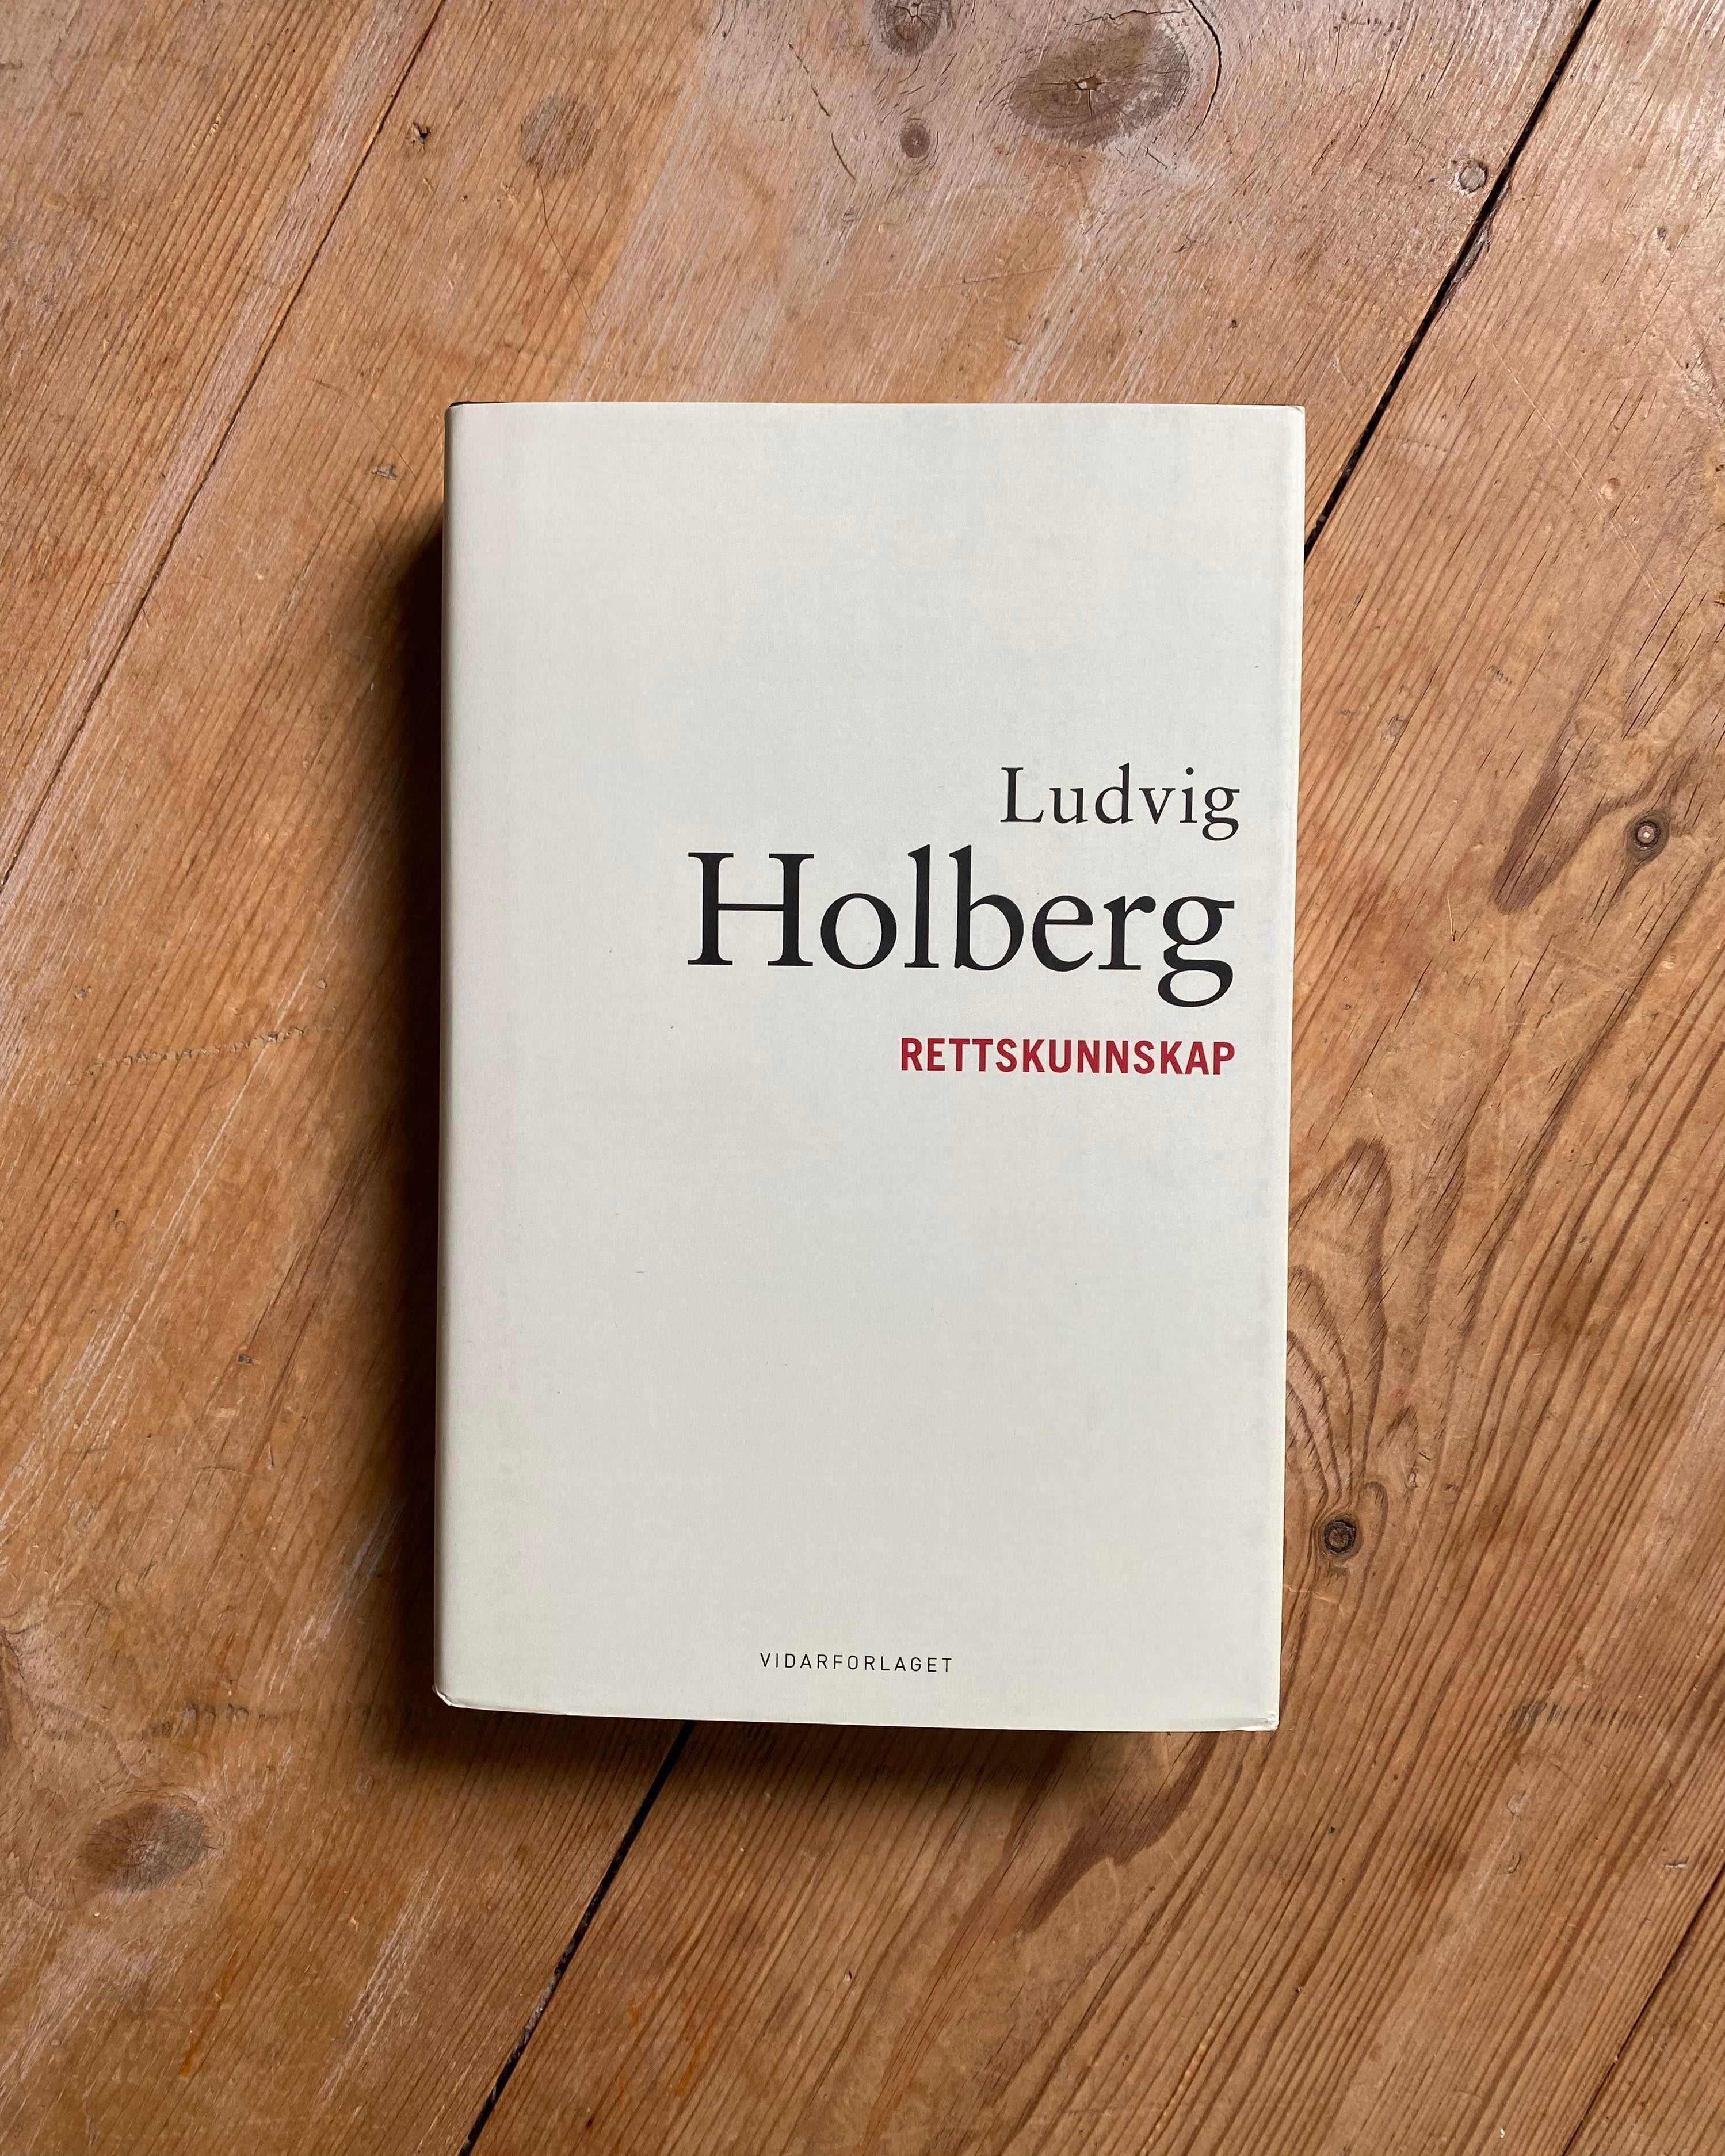 Historisk bestselger – Ludvig Holberg var en forkjemper for dannelse